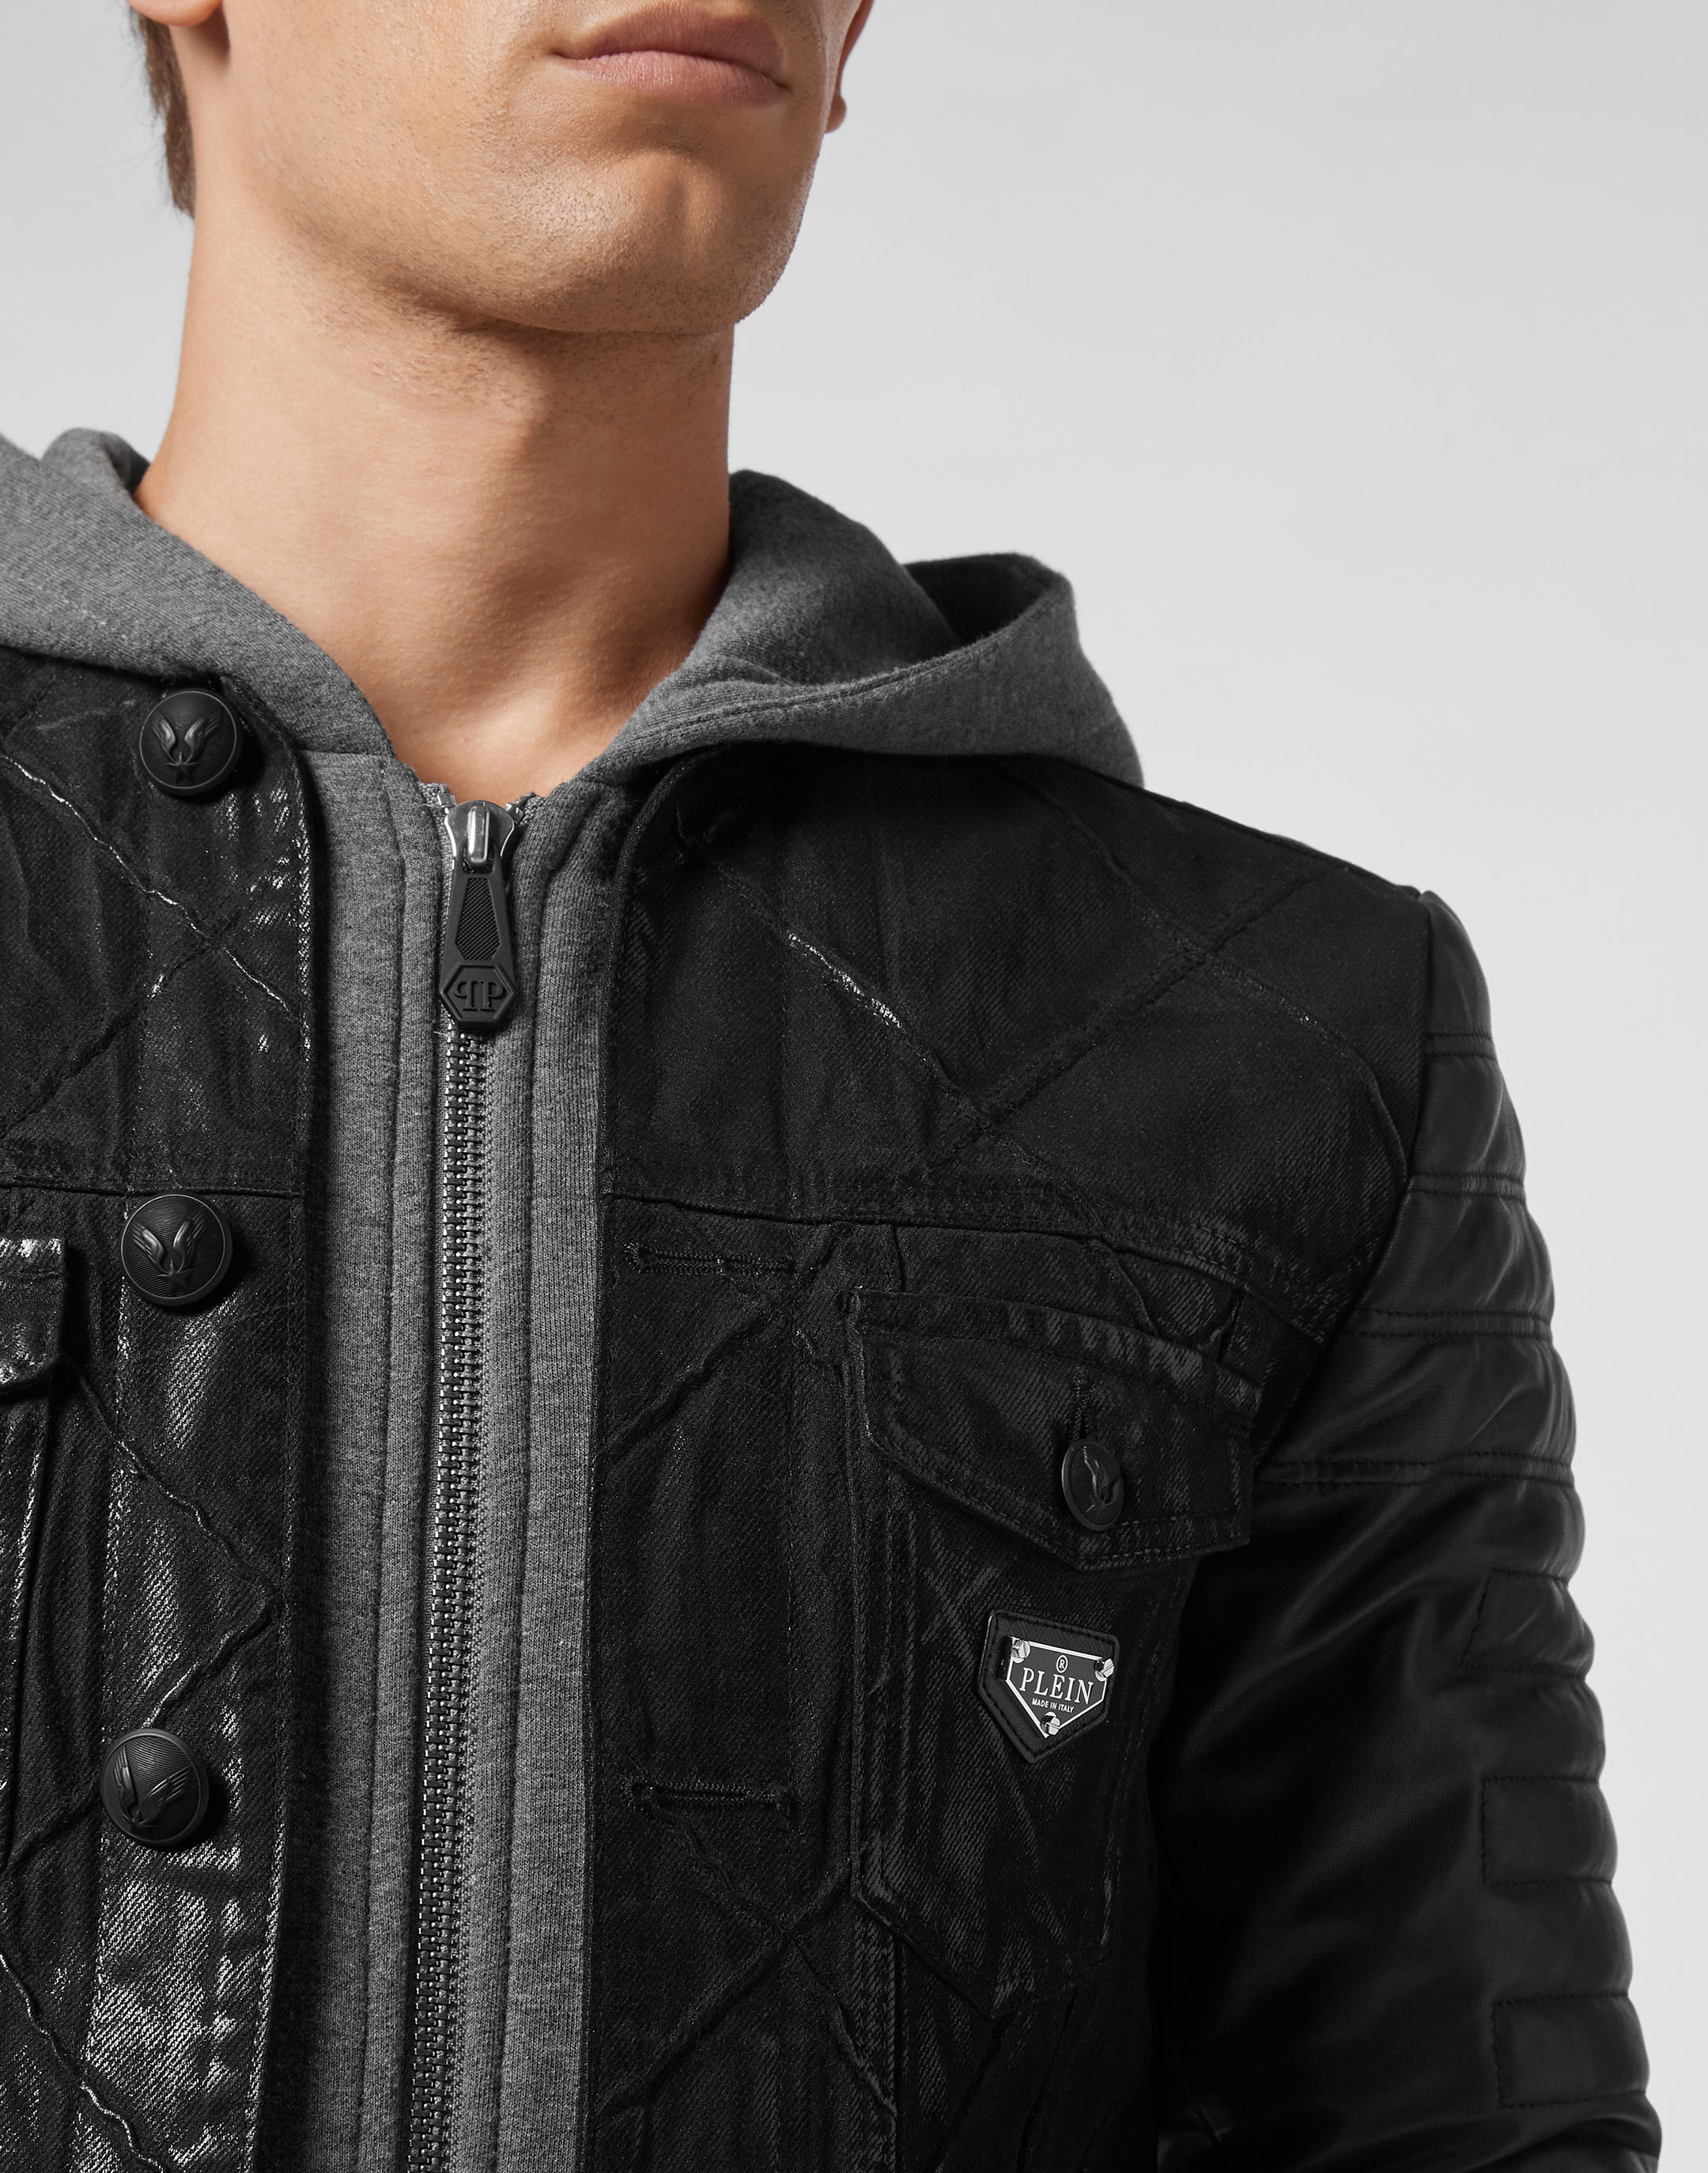 👌 Simple, Yet Cool Look! #hoodie #denim #jacket #outfits #men